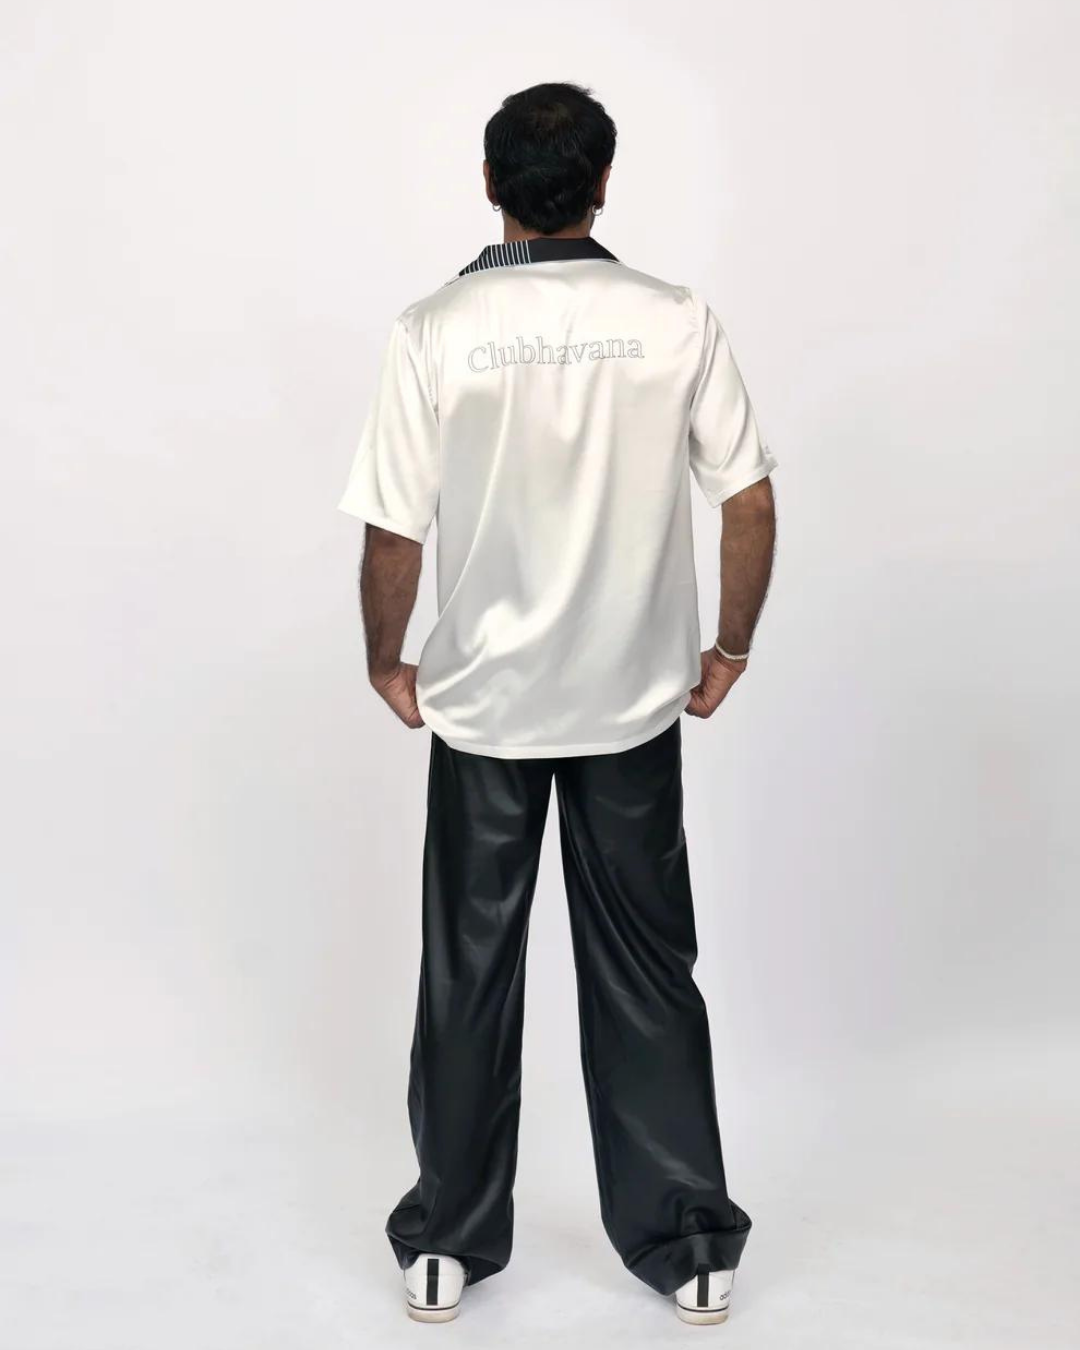 Thunderclap - Premium Soft Satin Shirt